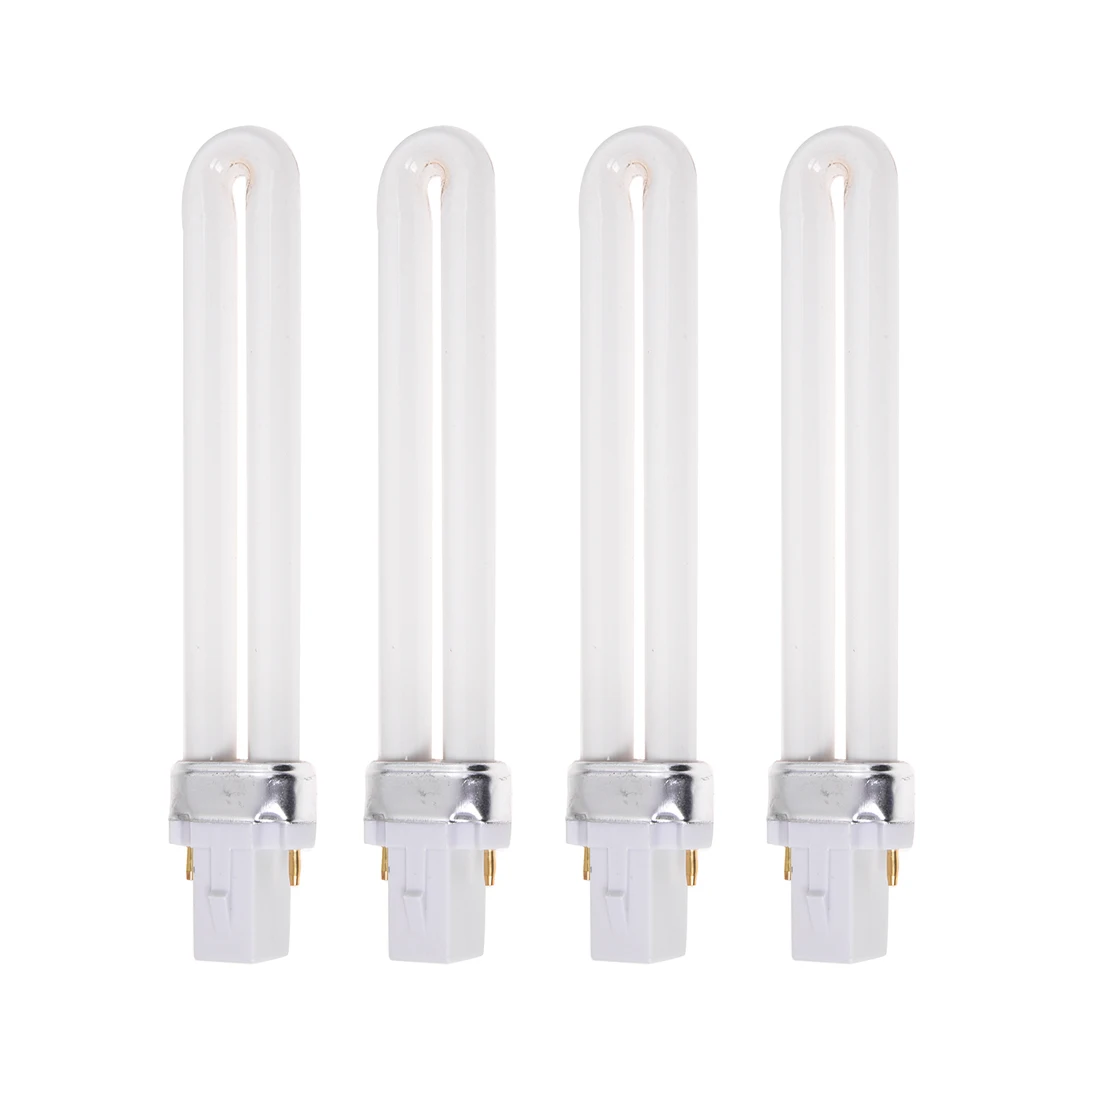 Оптовая продажа 4x9 Вт УФ-электрическая лампа трубчатая Замена для 36 Вт УФ лампа для высыхания лечения